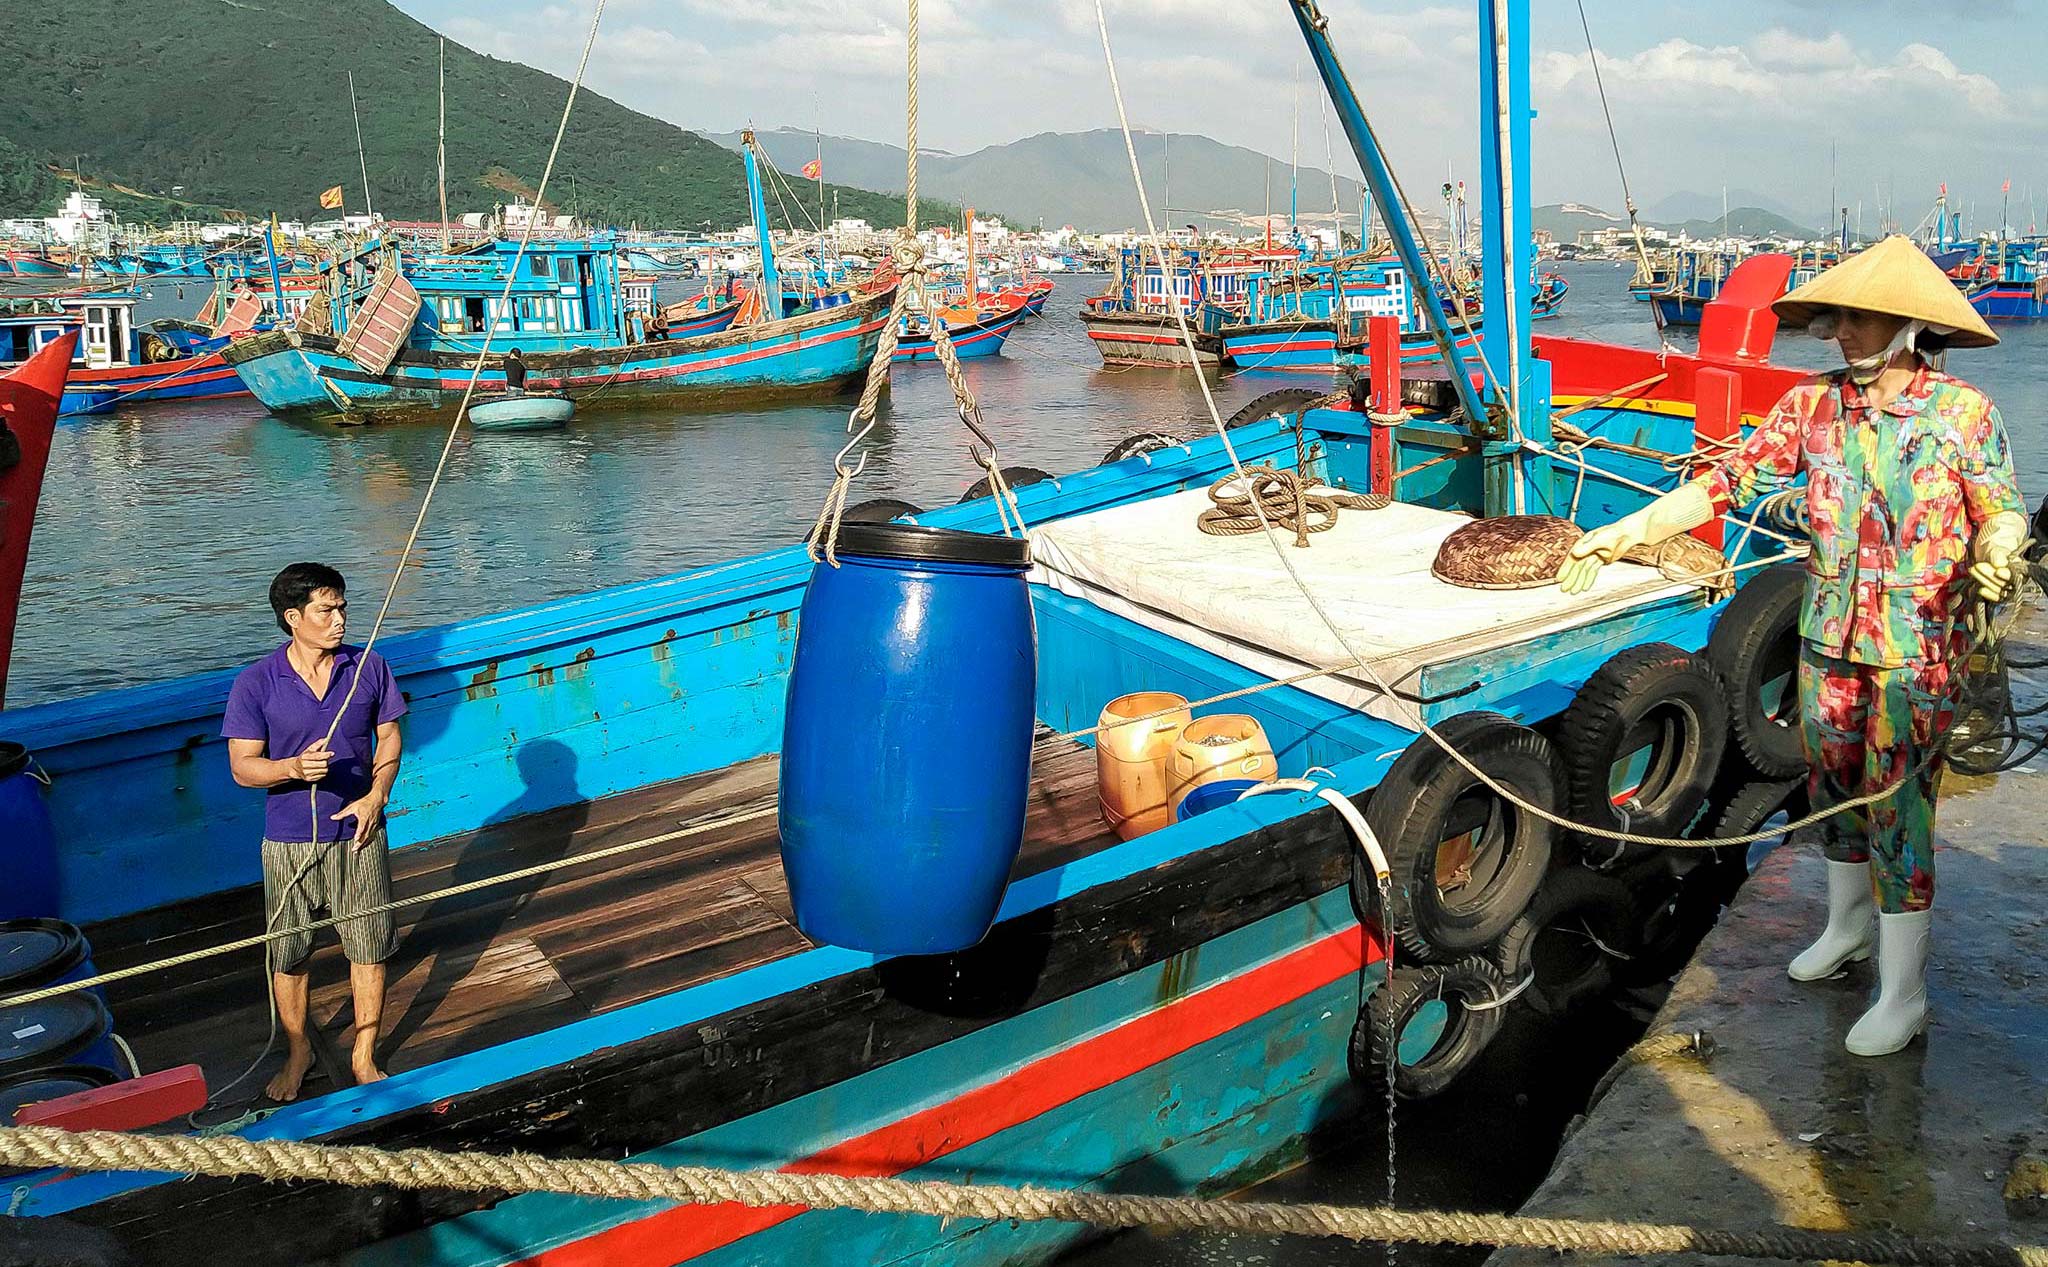 [Bphone 3] Chuyện về một chợ cá nhộn nhịp nhất Nha Trang